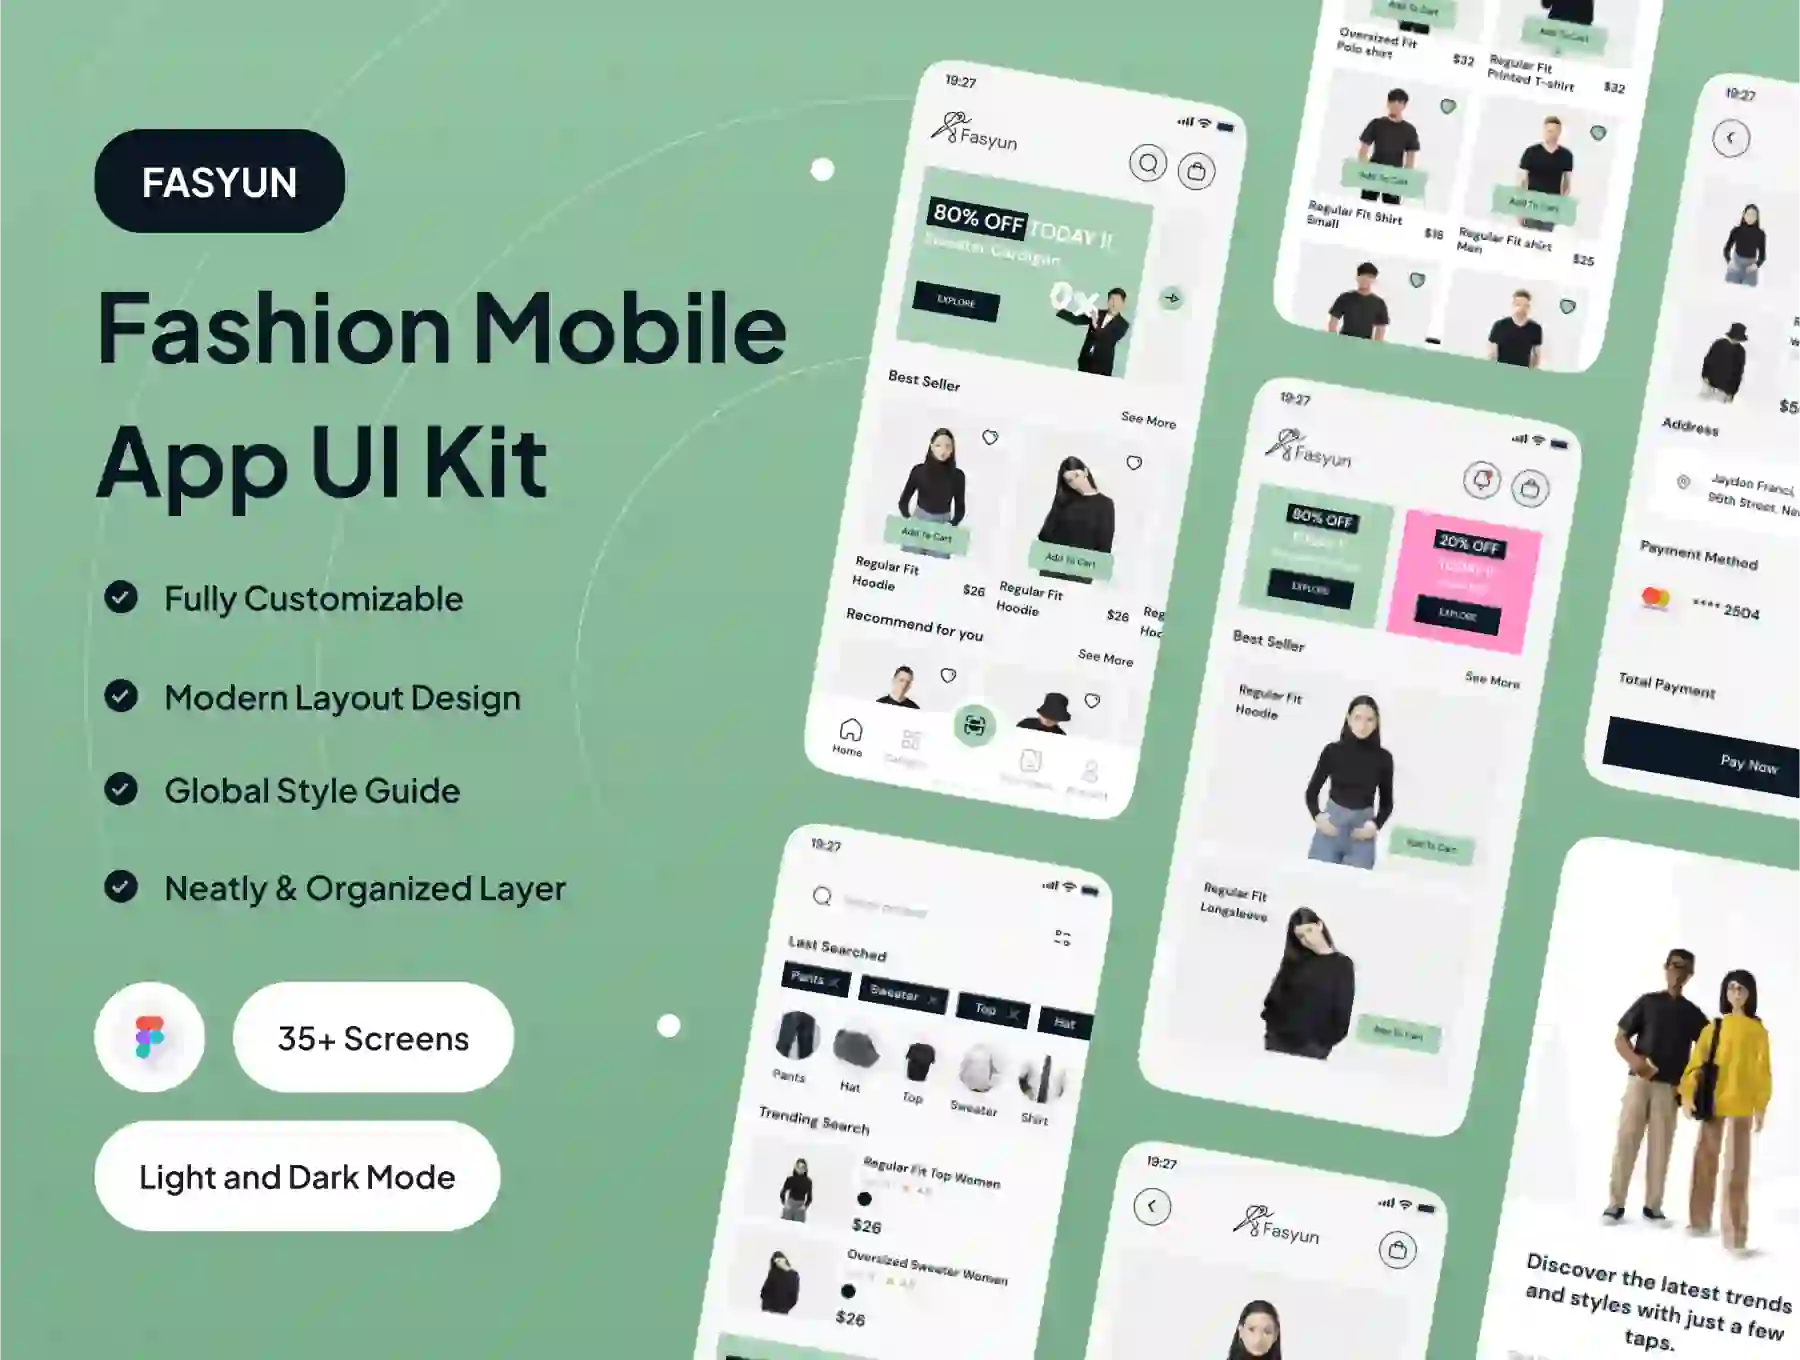 FASYUN - Fashion Mobile App UI Kit